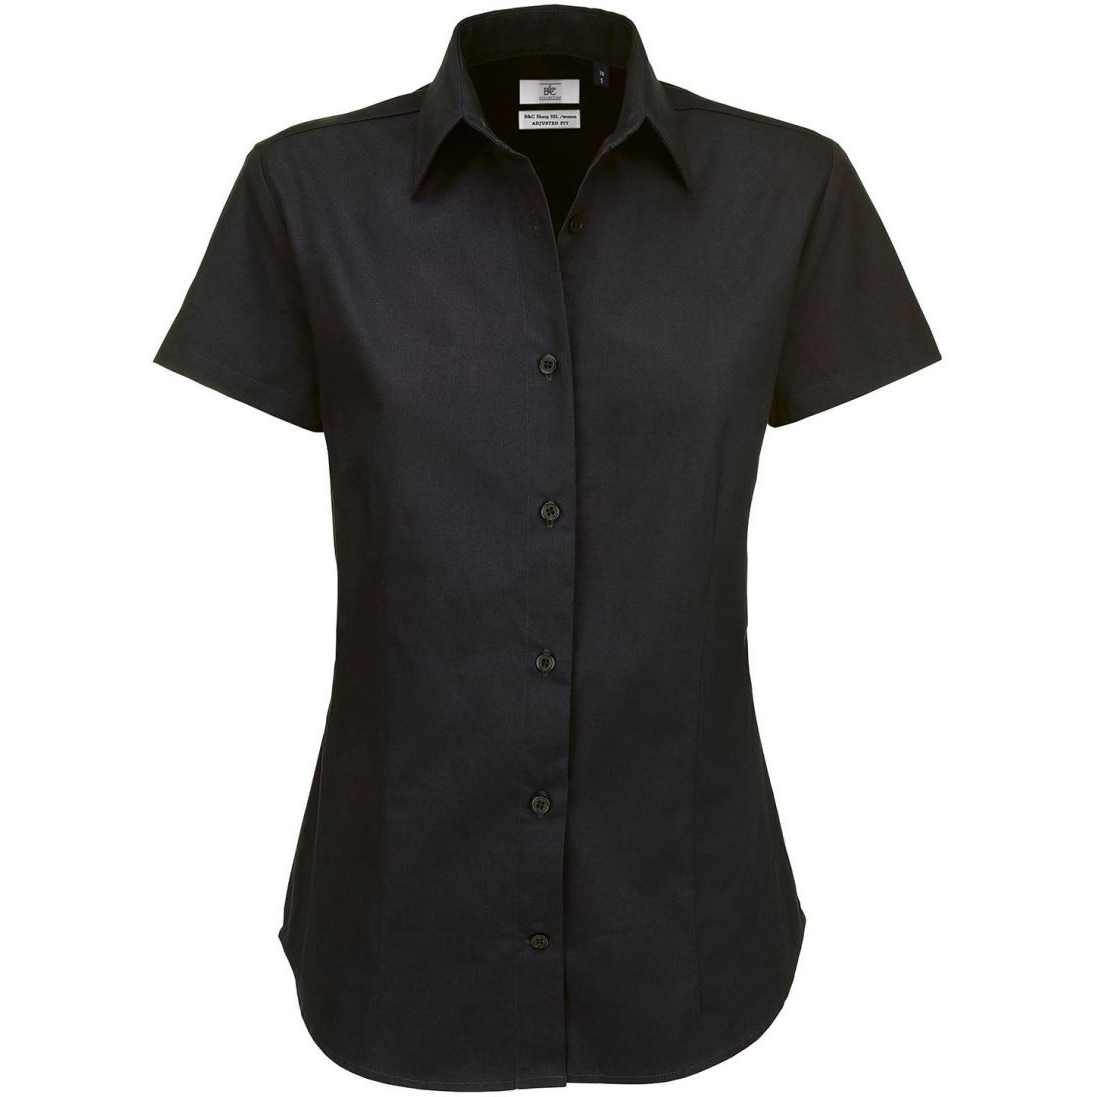 Dámská keprová košile B&C Sharp s krátkým rukávem - černá, L